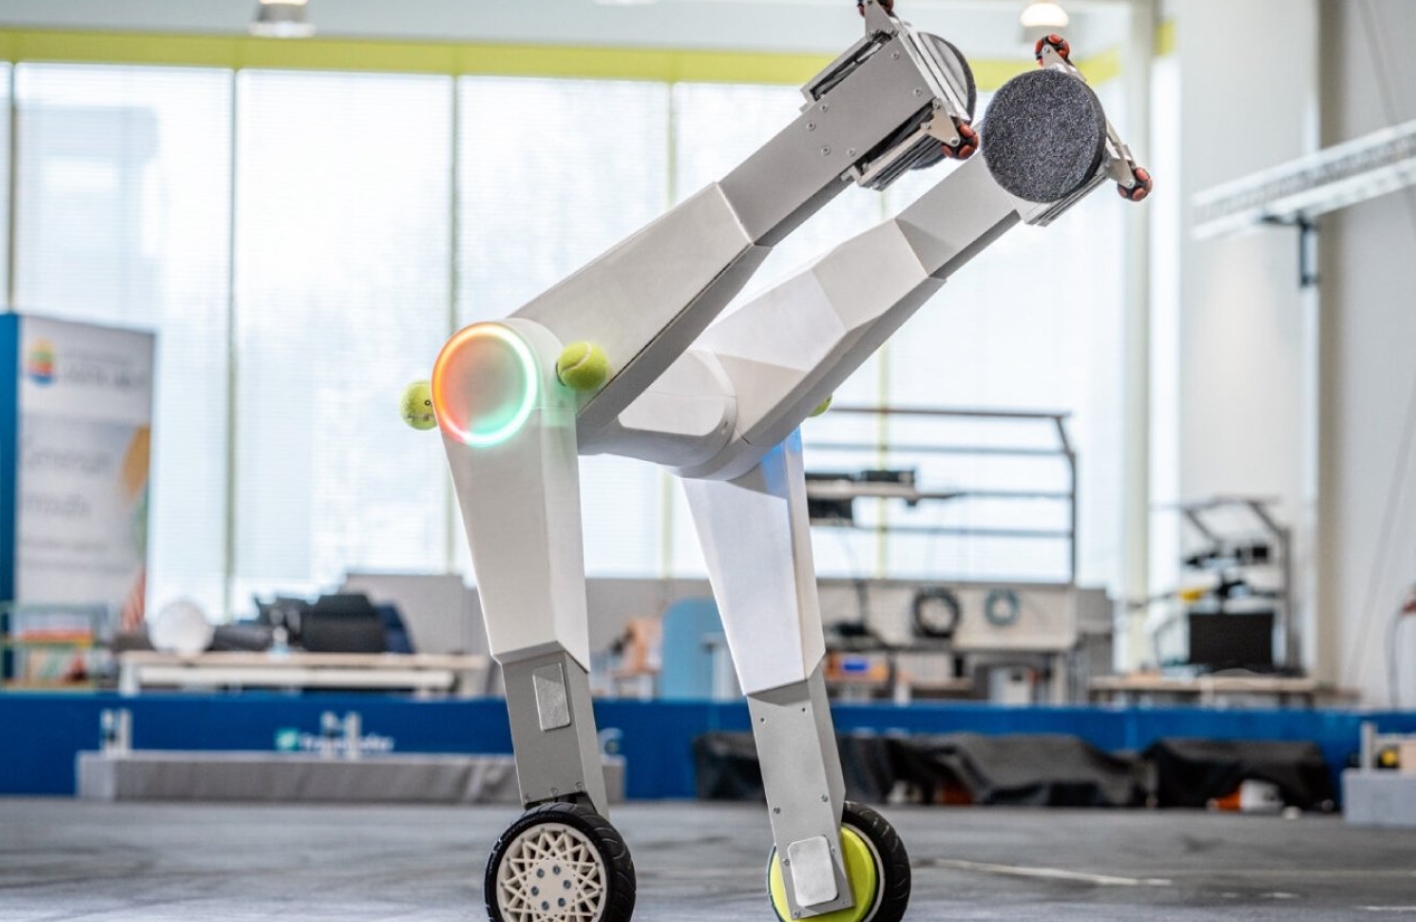 El evoBOT: el "compañero" robótico de los trabajadores de carga del futuro 1